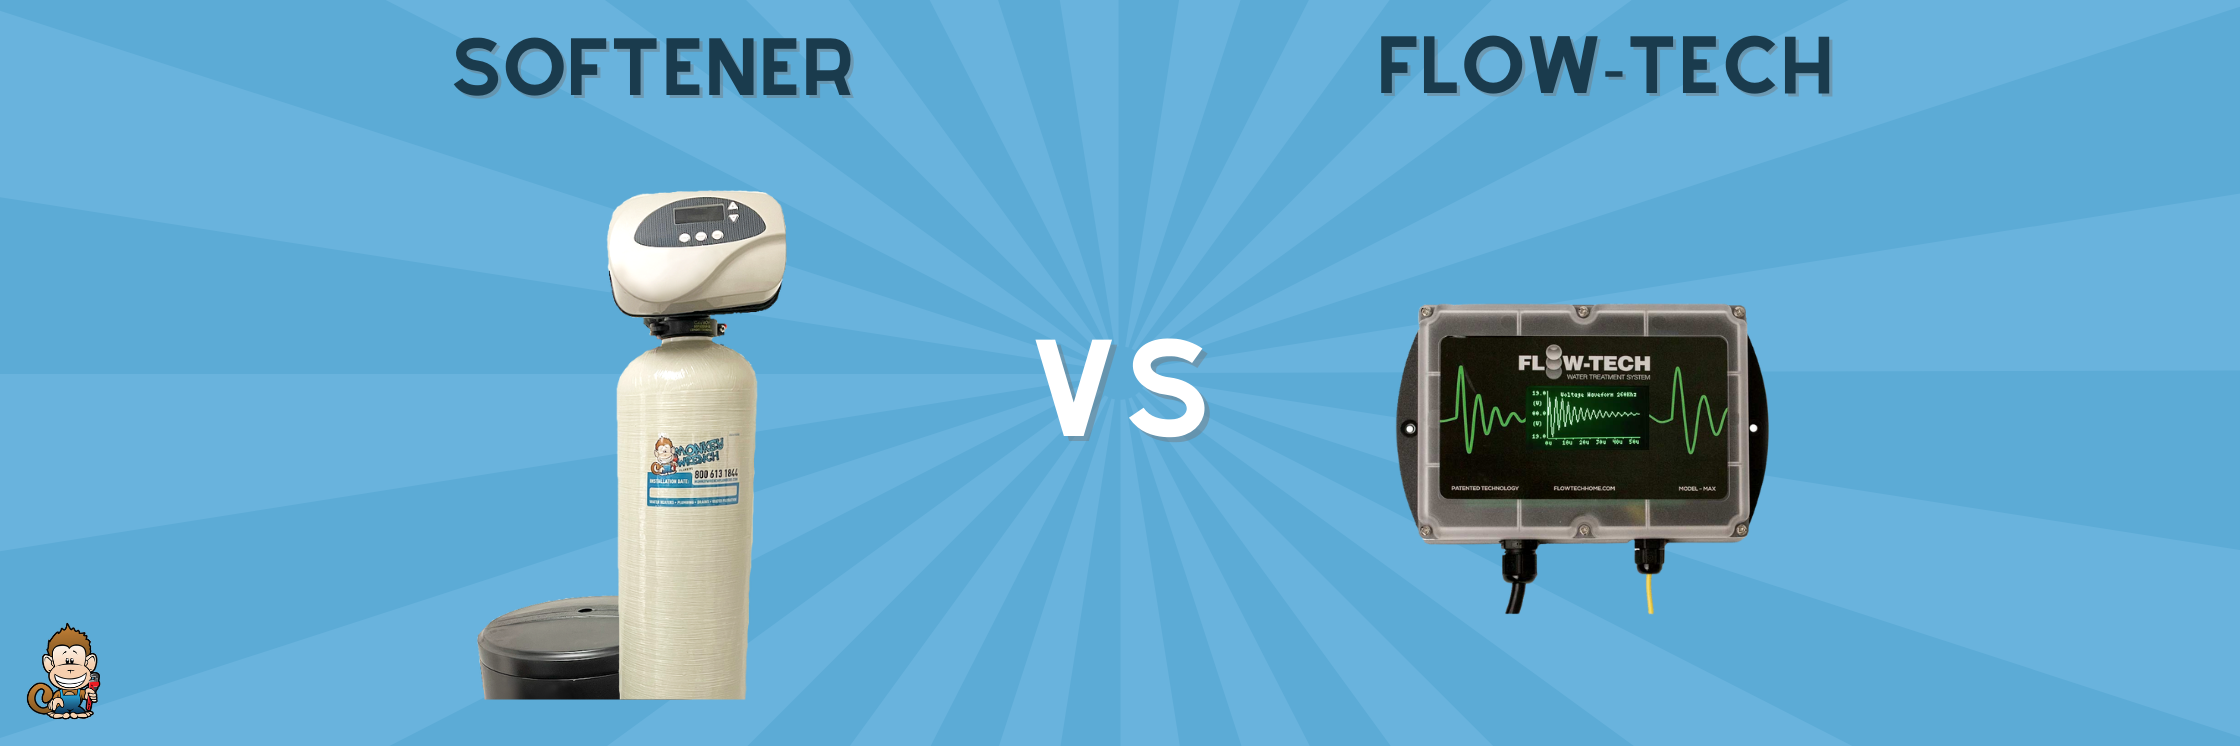 Water Softeners vs. Flow-Tech